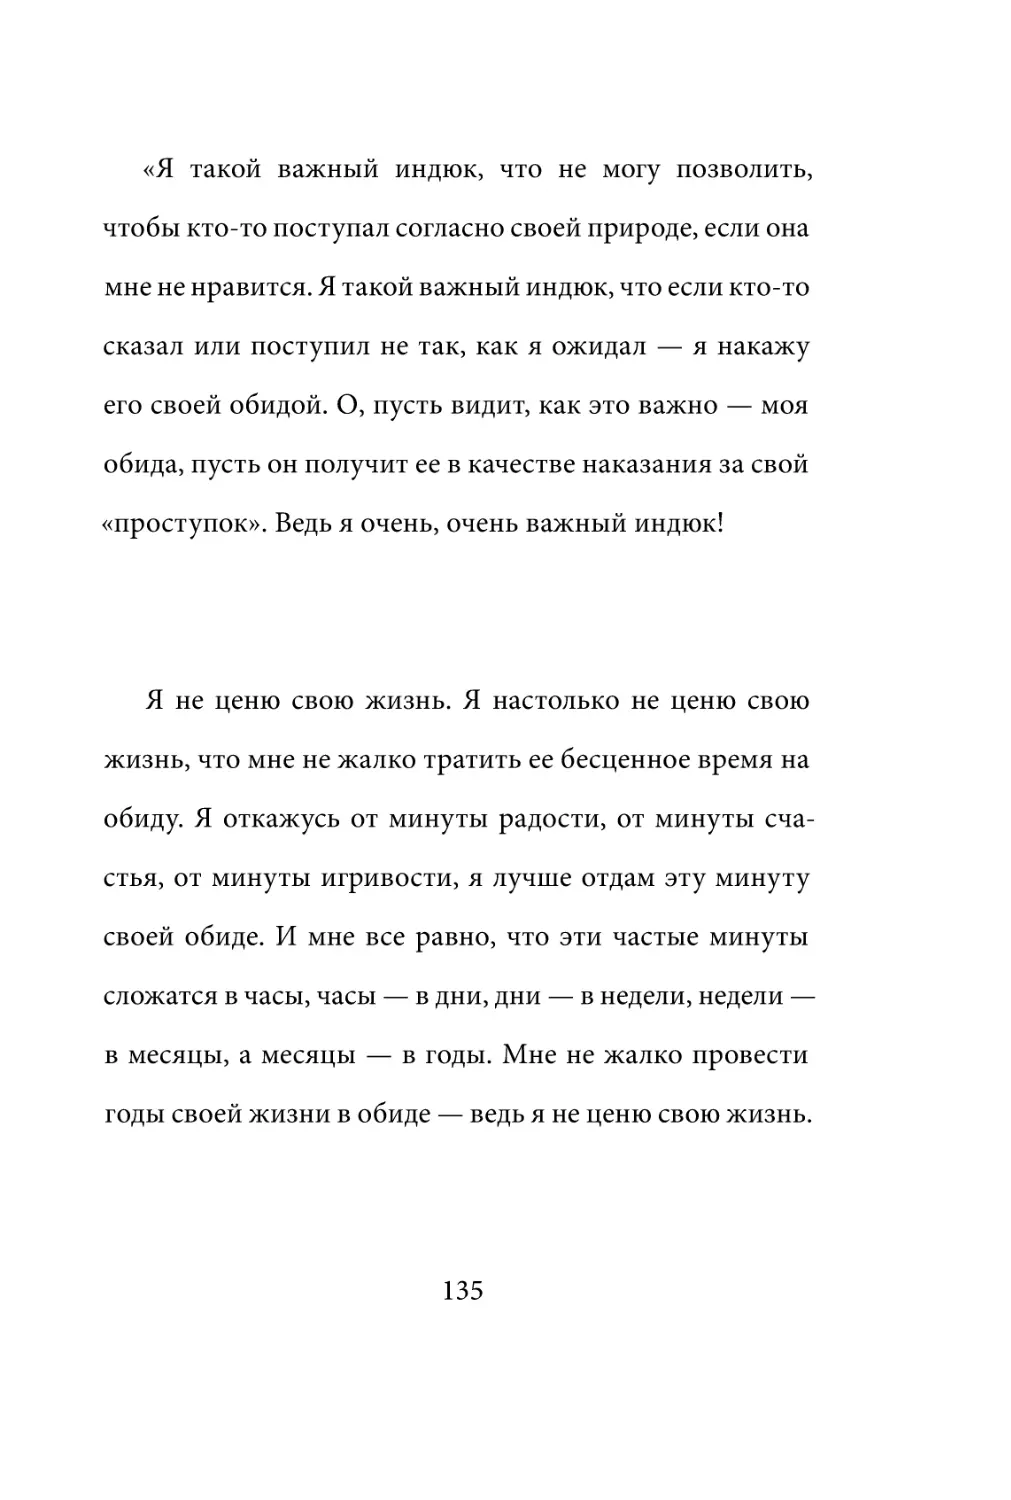 Sergey_Filippov_Dnevnik_samorazvitia_Evolyutsia_Vnutrennego_Sostoyania_135.pdf (p.135)